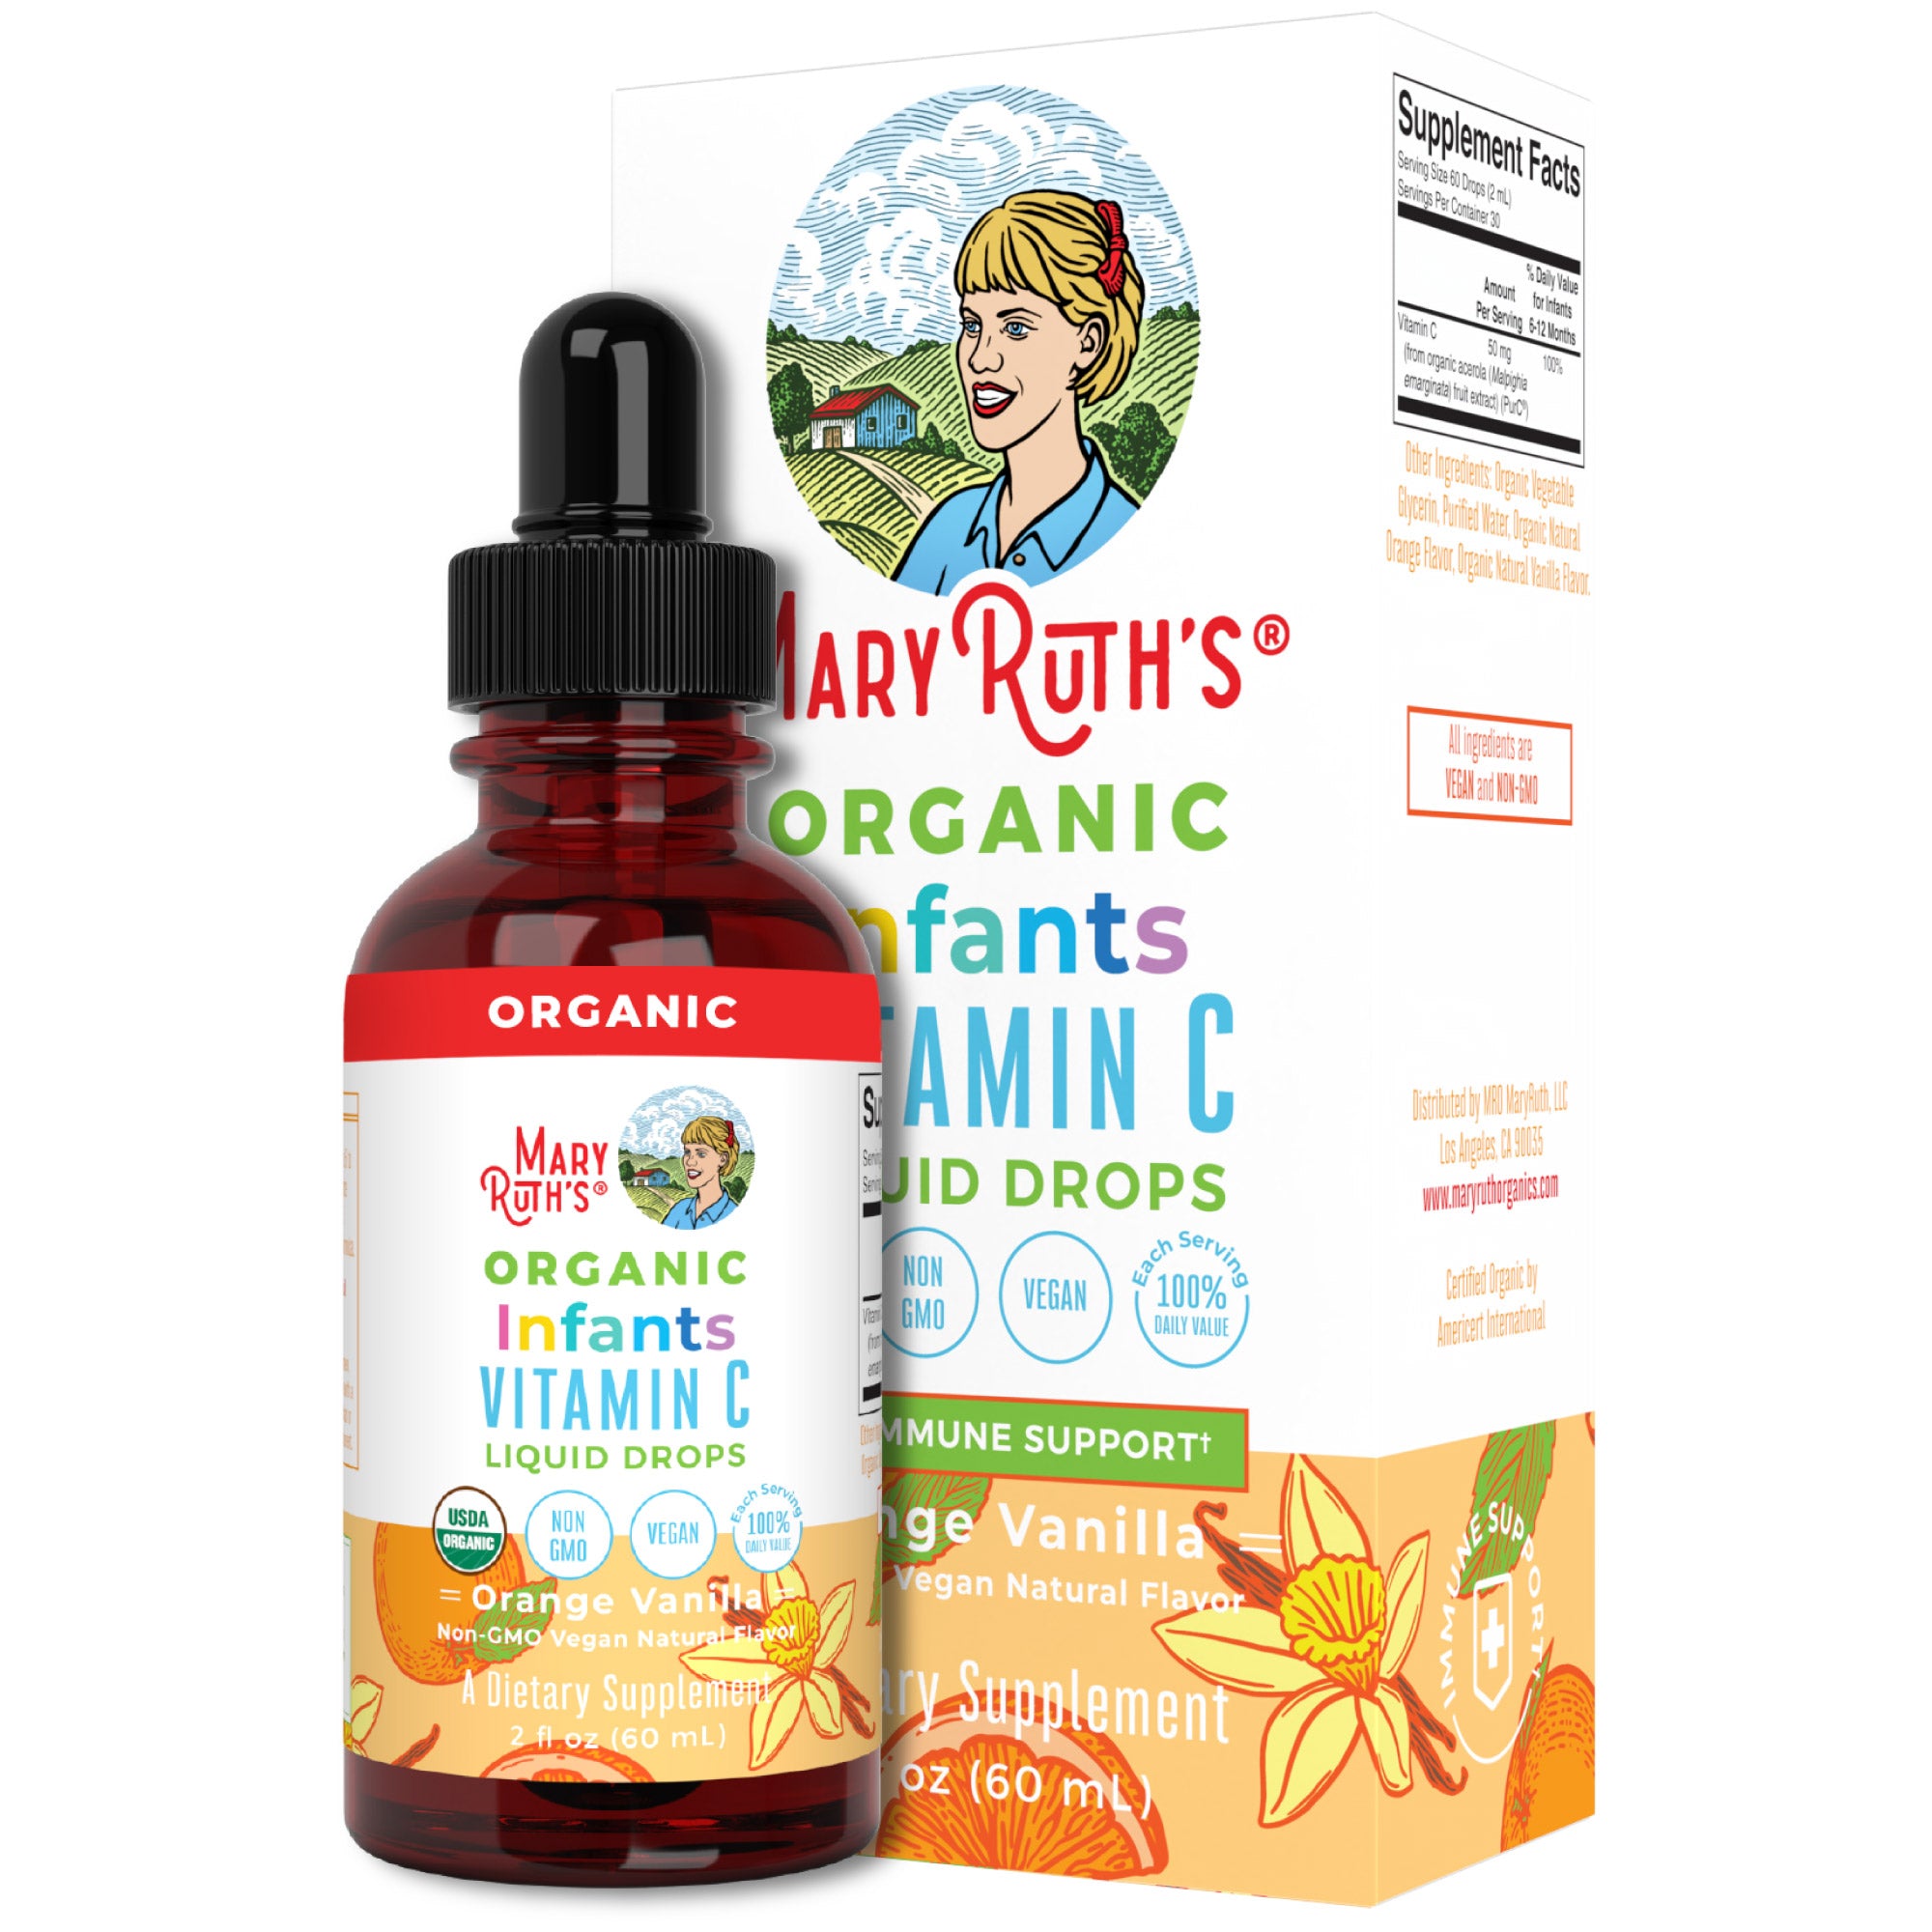 Organic Infants Vitamin C Liquid Drops